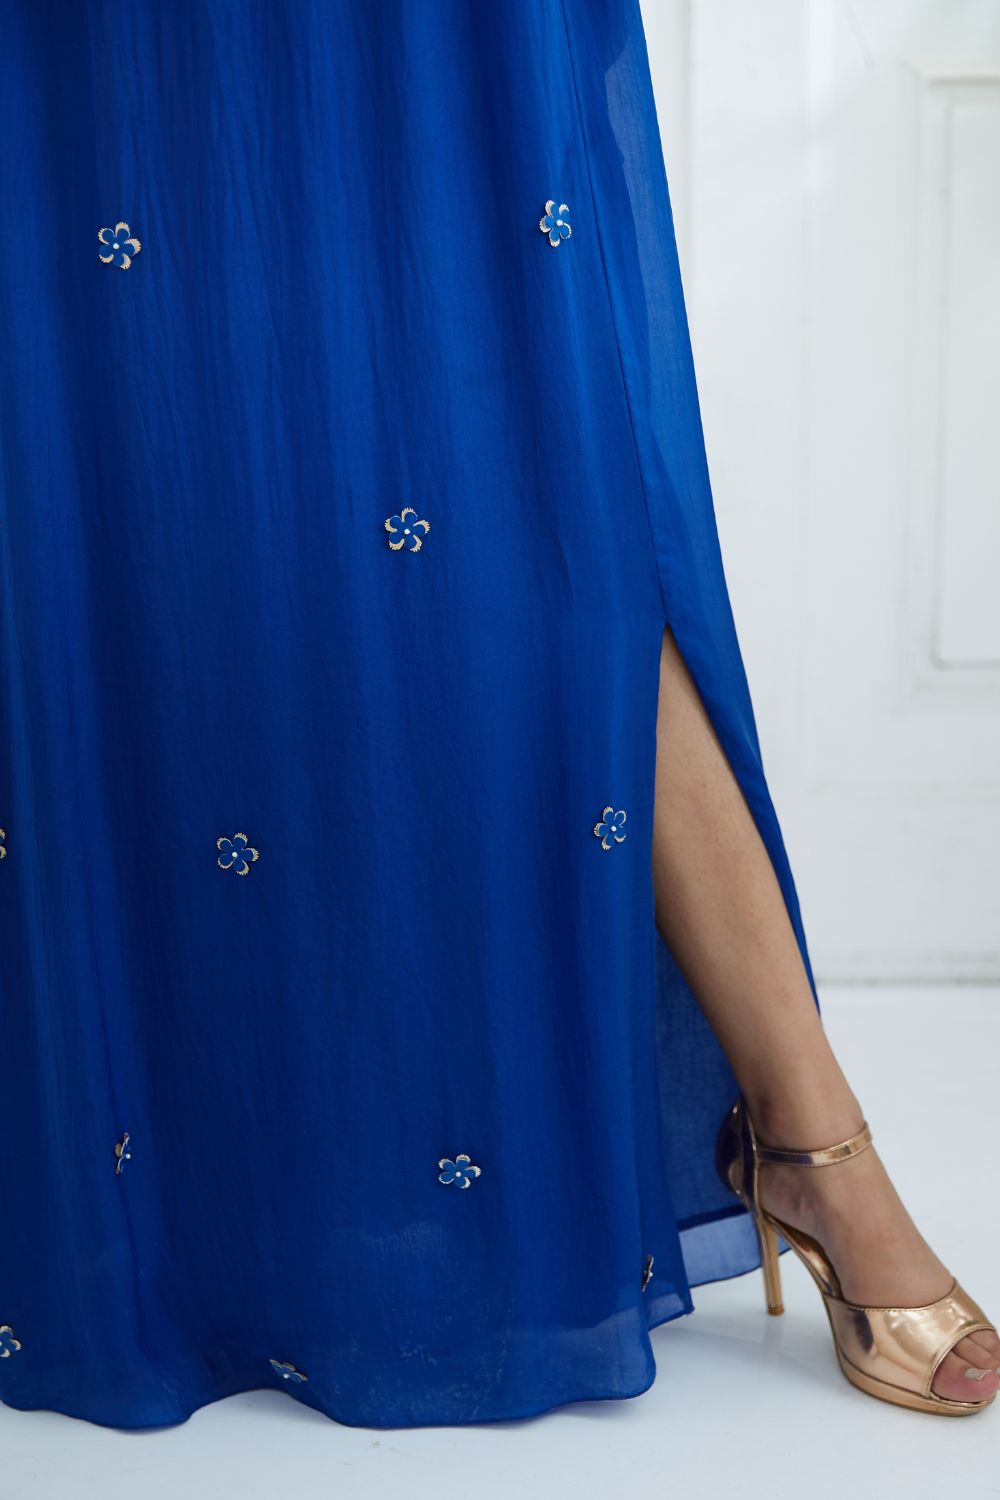 Regal Resort Patchwork Print Embellished A-Line Dress - Blue/Gold